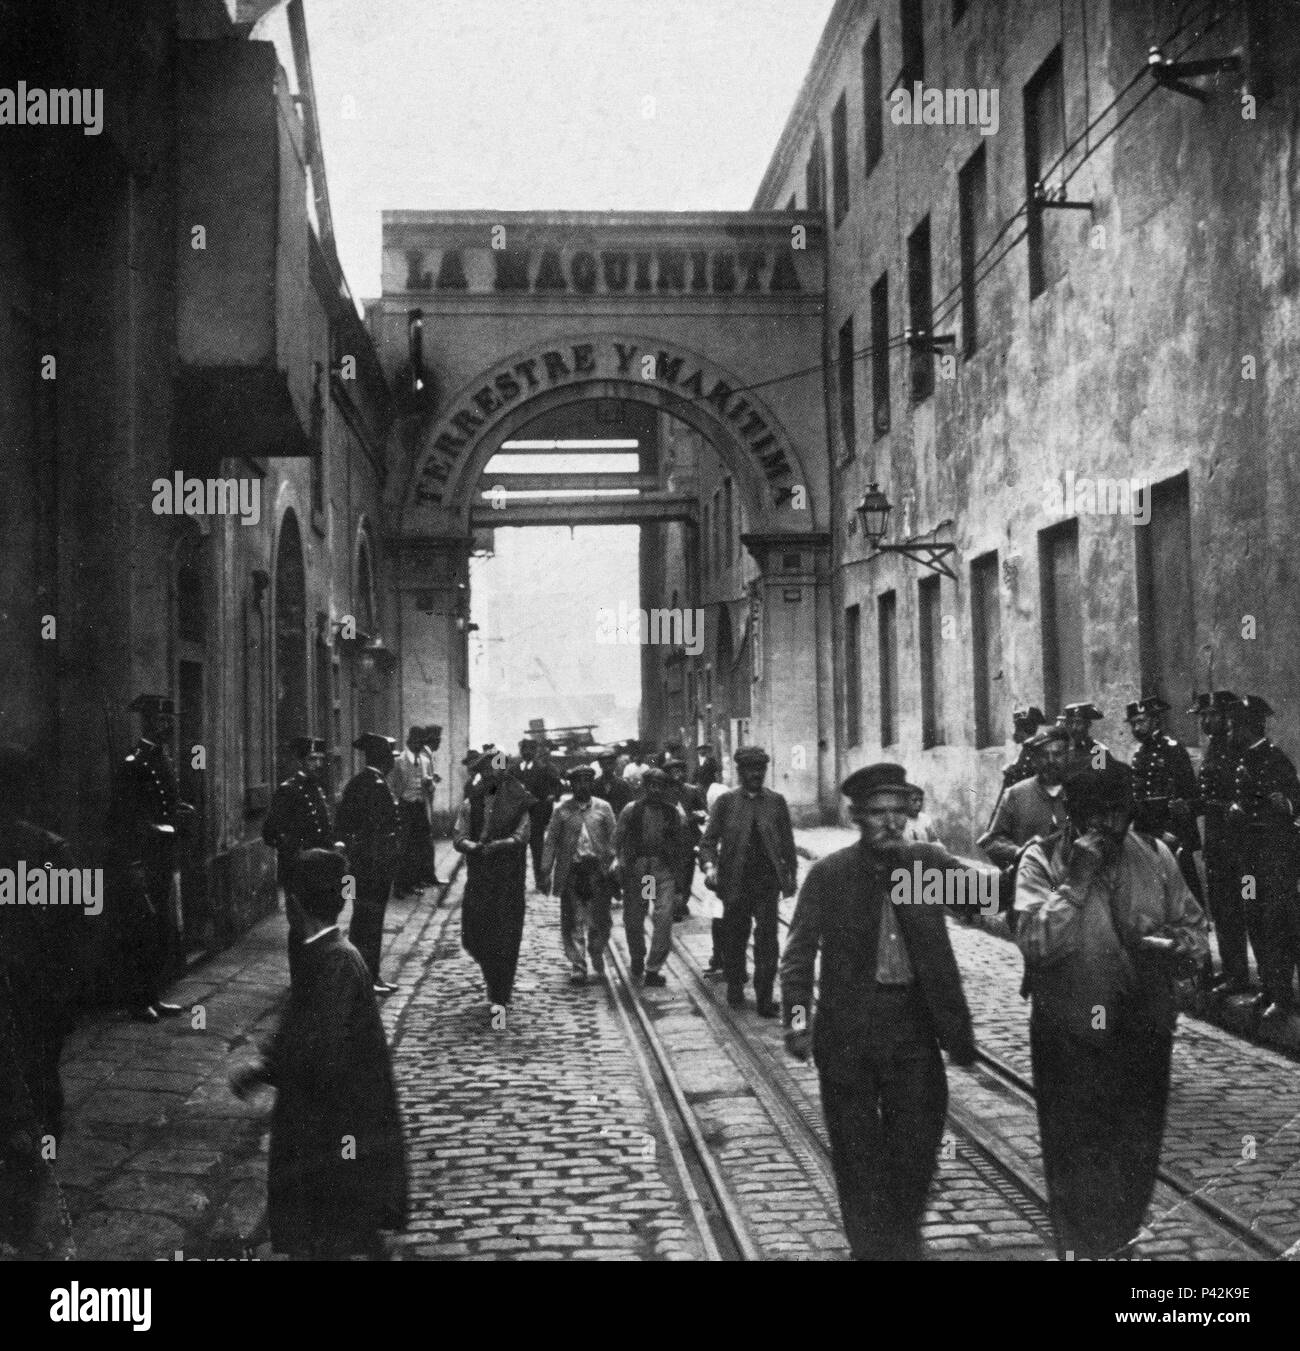 Hª DE CATALUNYA - HUELGA DE LA METALURGIA - MOMENTO EN QUE LOS OBREROS ABANDONAN LA MAQUINISTA 02-8-1910. Lage: Biblioteca Nacional - COLECCION, MADRID, SPANIEN. Stockfoto